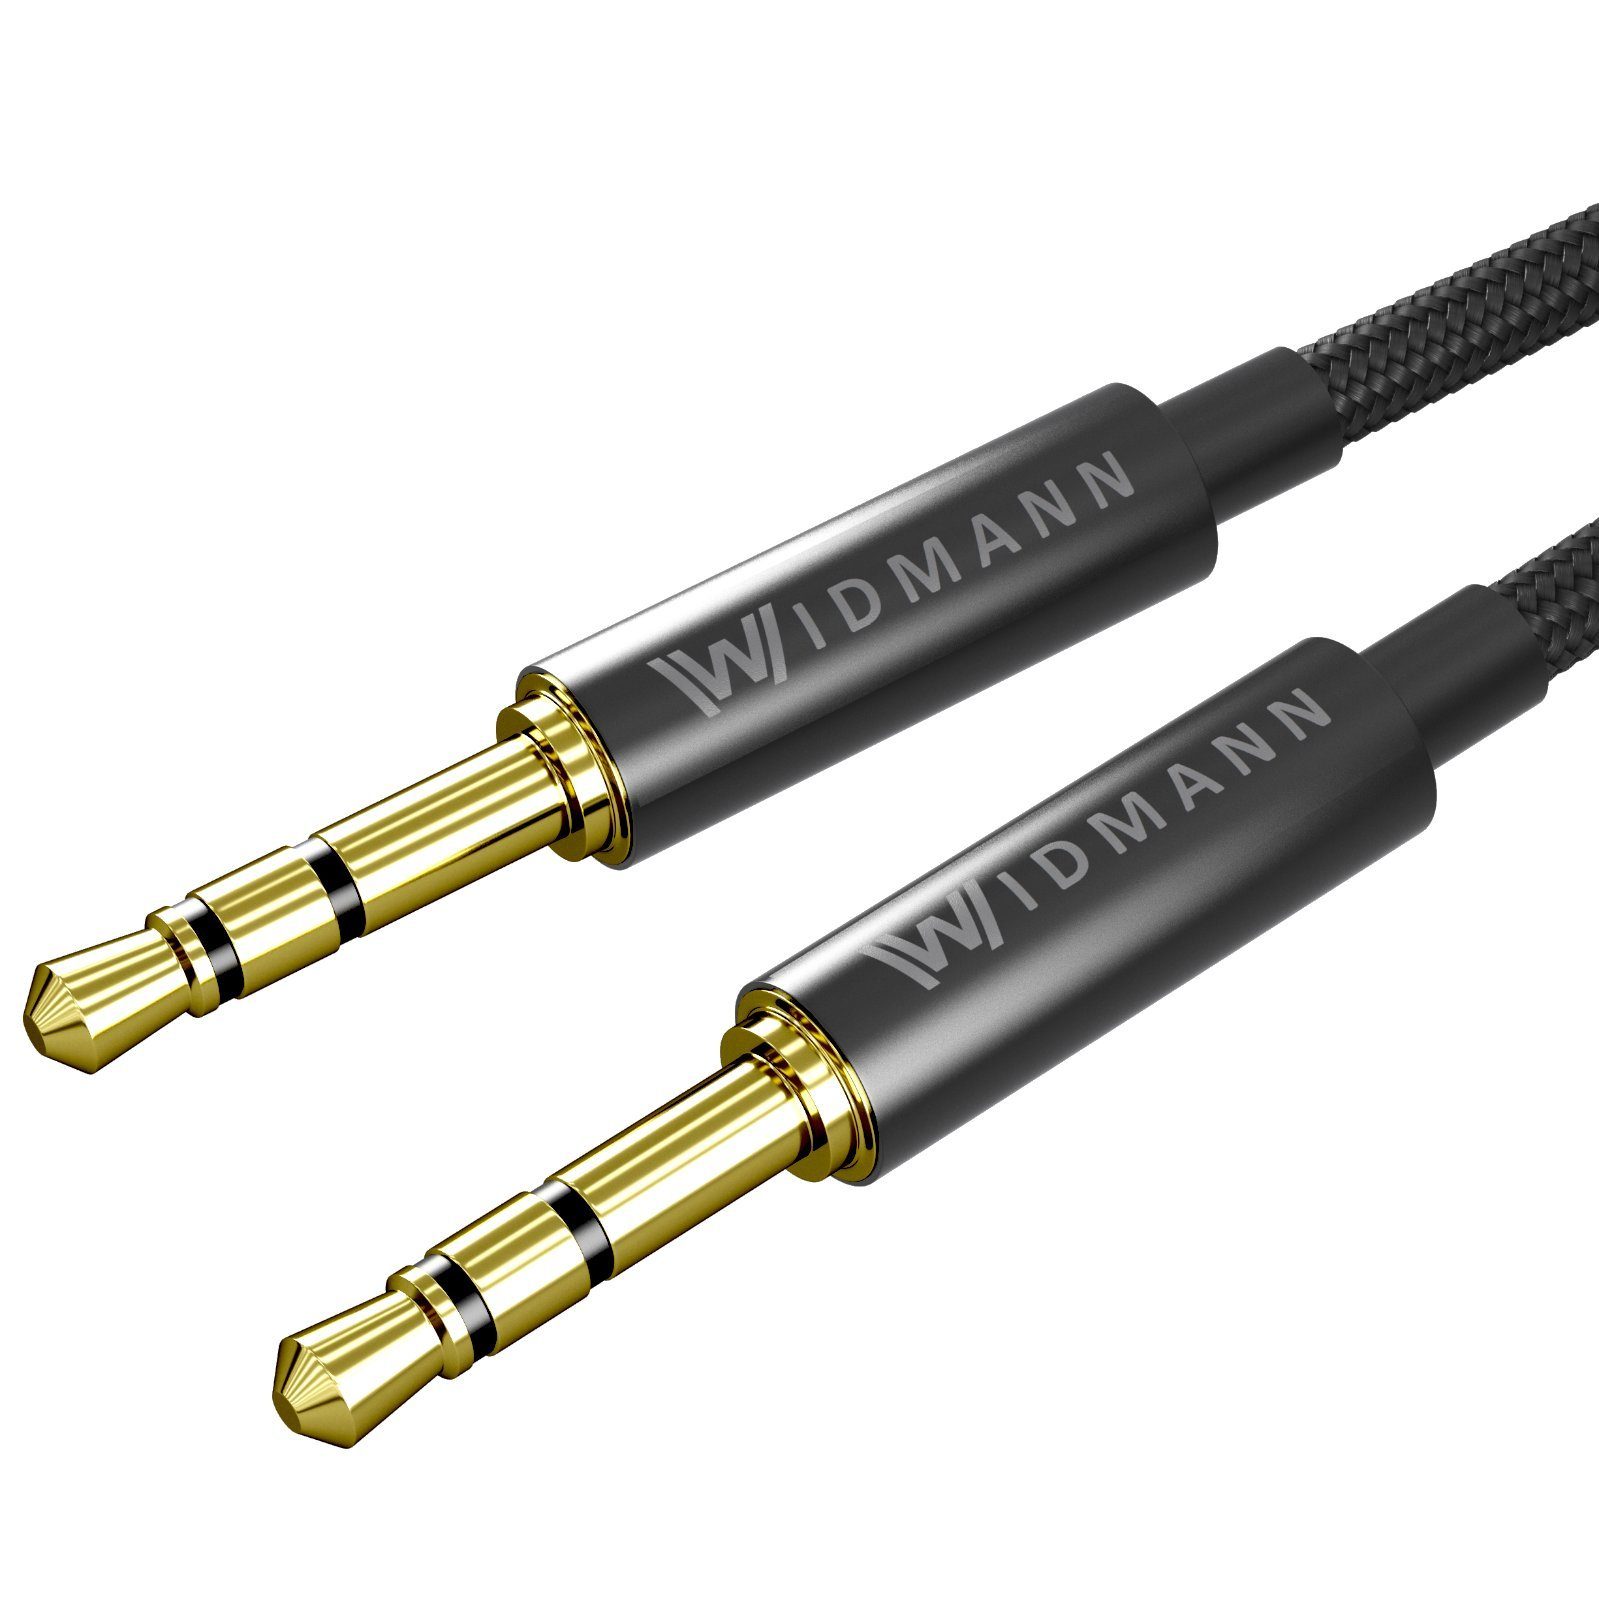 Widmann-Shop Aux Audio Kabel 3,5mm Klinke zu Klinke männlich Stereo  vergoldet 1M Audio-Kabel, 3,5-mm-Klinke, 3,5-mm-Klinke (100 cm), geeignet  für alle 3,5mm Aux Anschlüsse, Klinkenkabel, Kabel Klinke 3,5mm